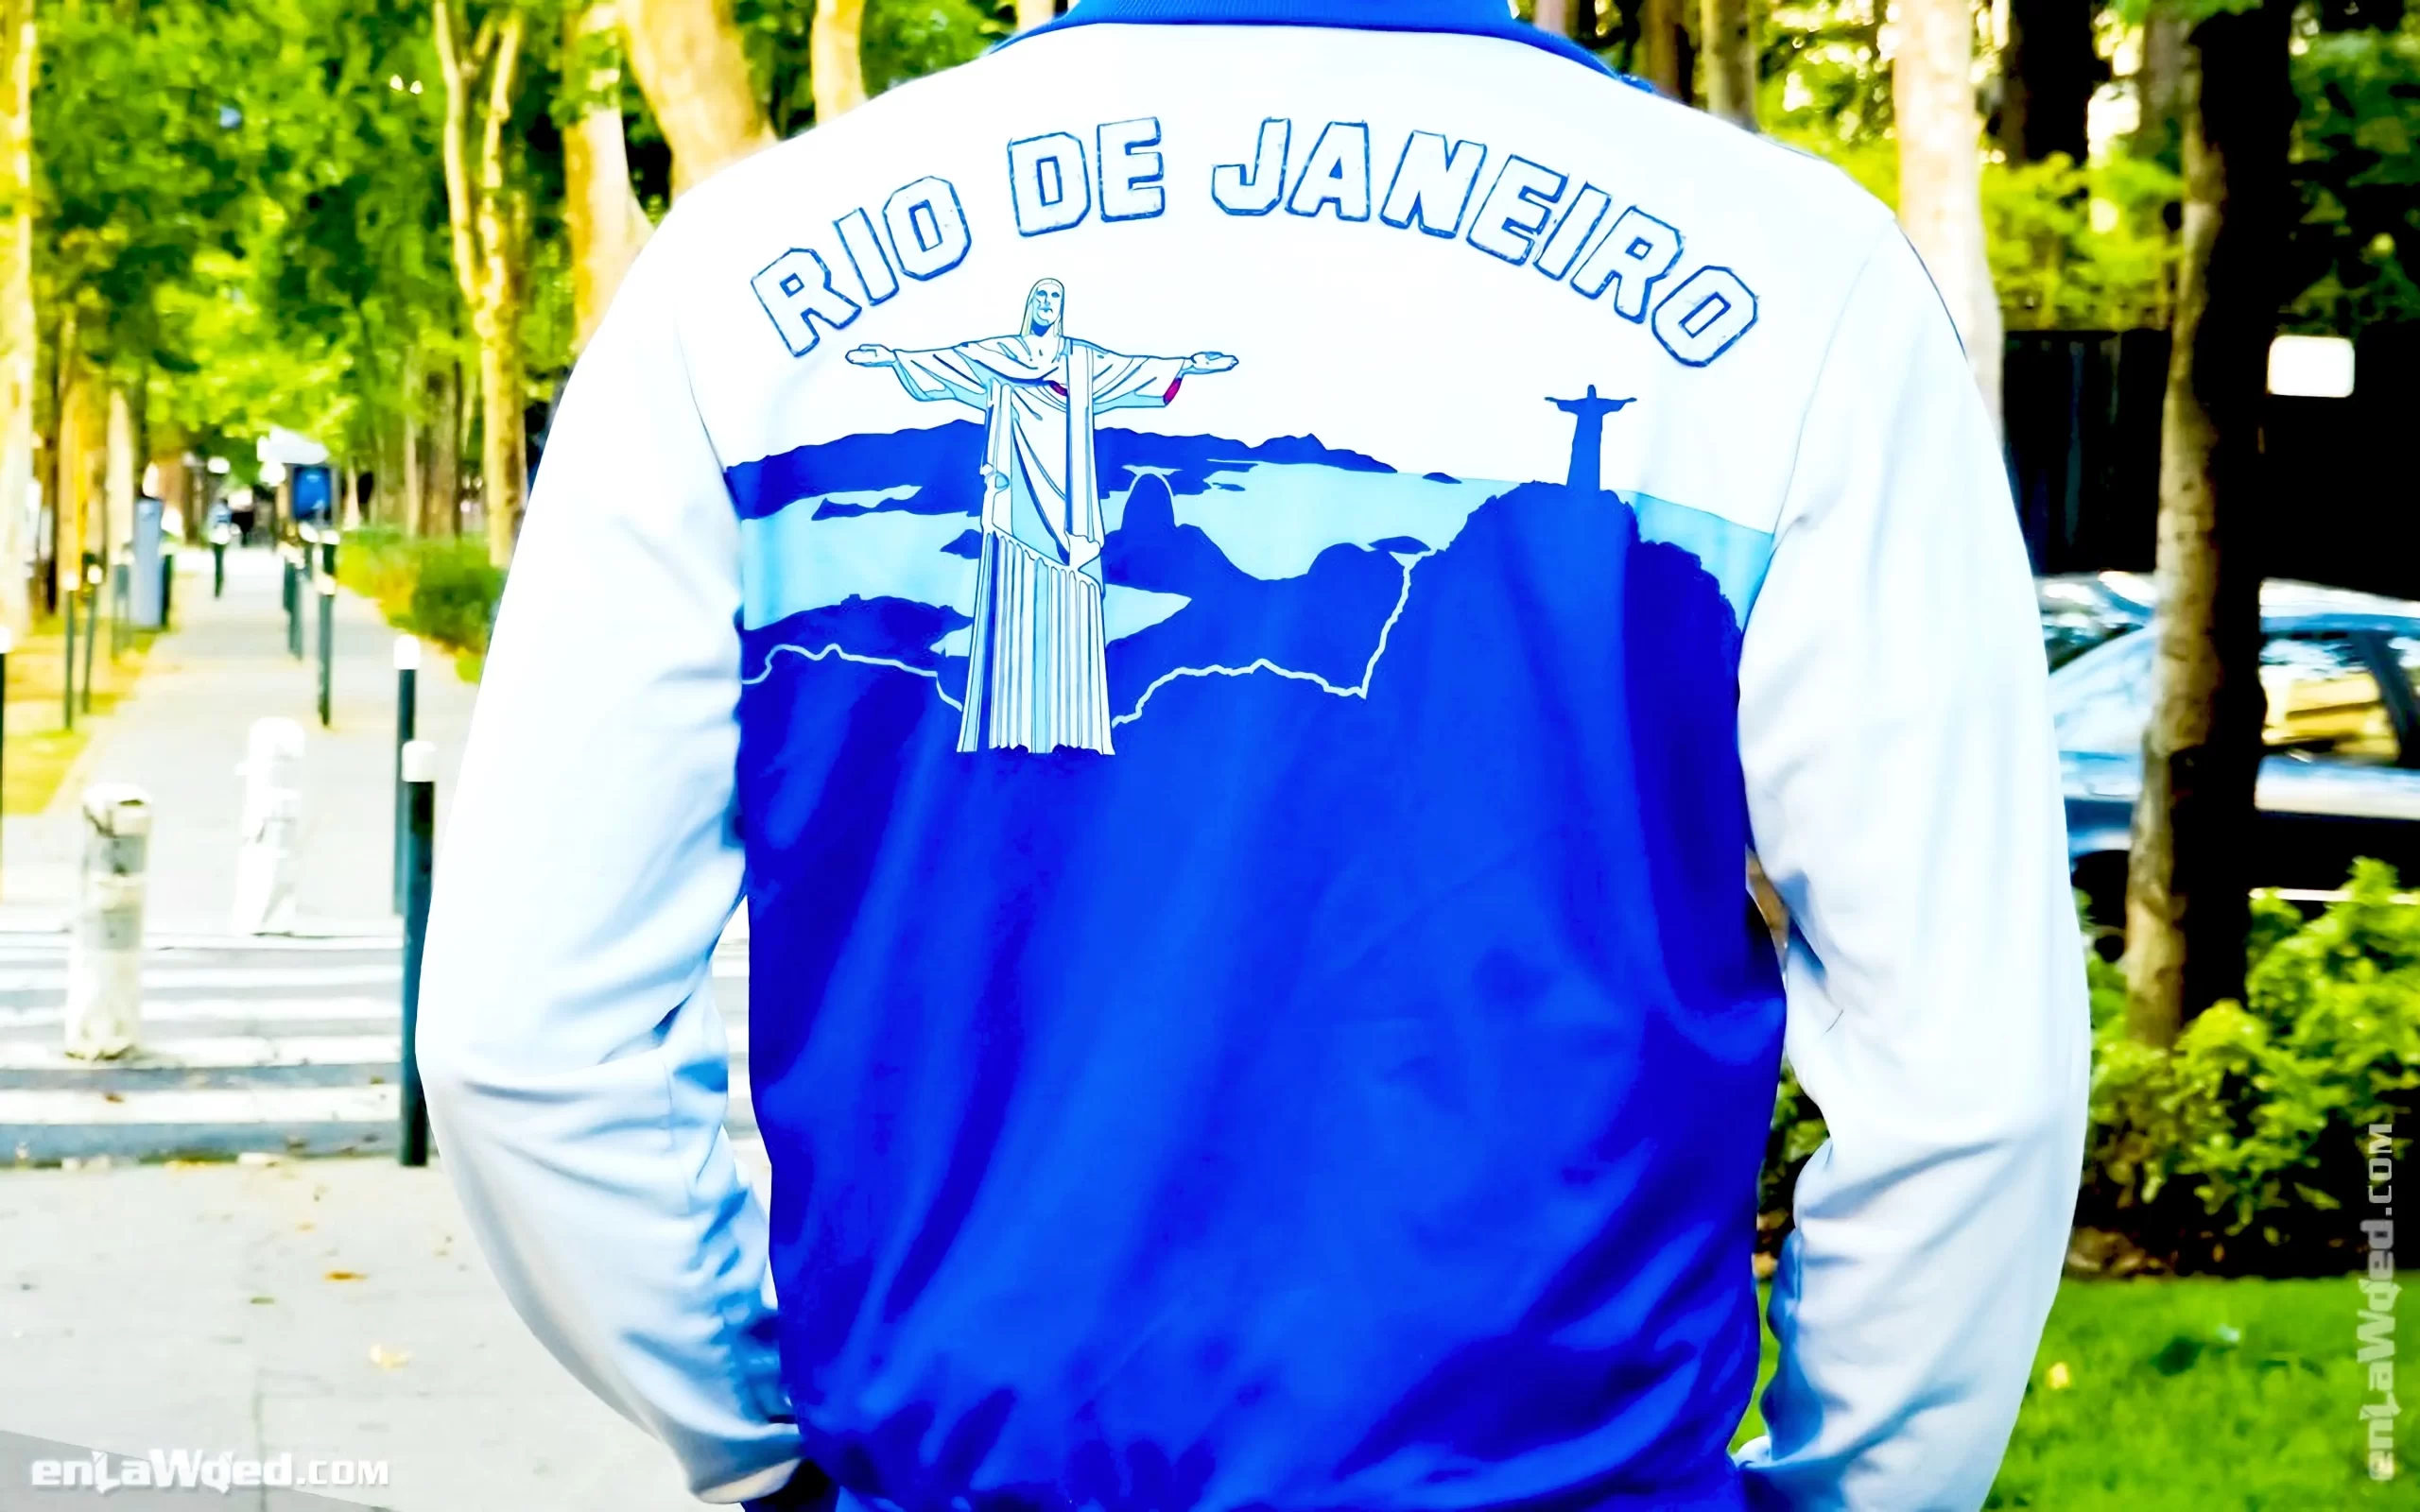 Men’s 2006 Rio de Janeiro TT-One by Adidas Originals: Carefree (EnLawded.com file #lmc5d7j5560u79bhxo3)